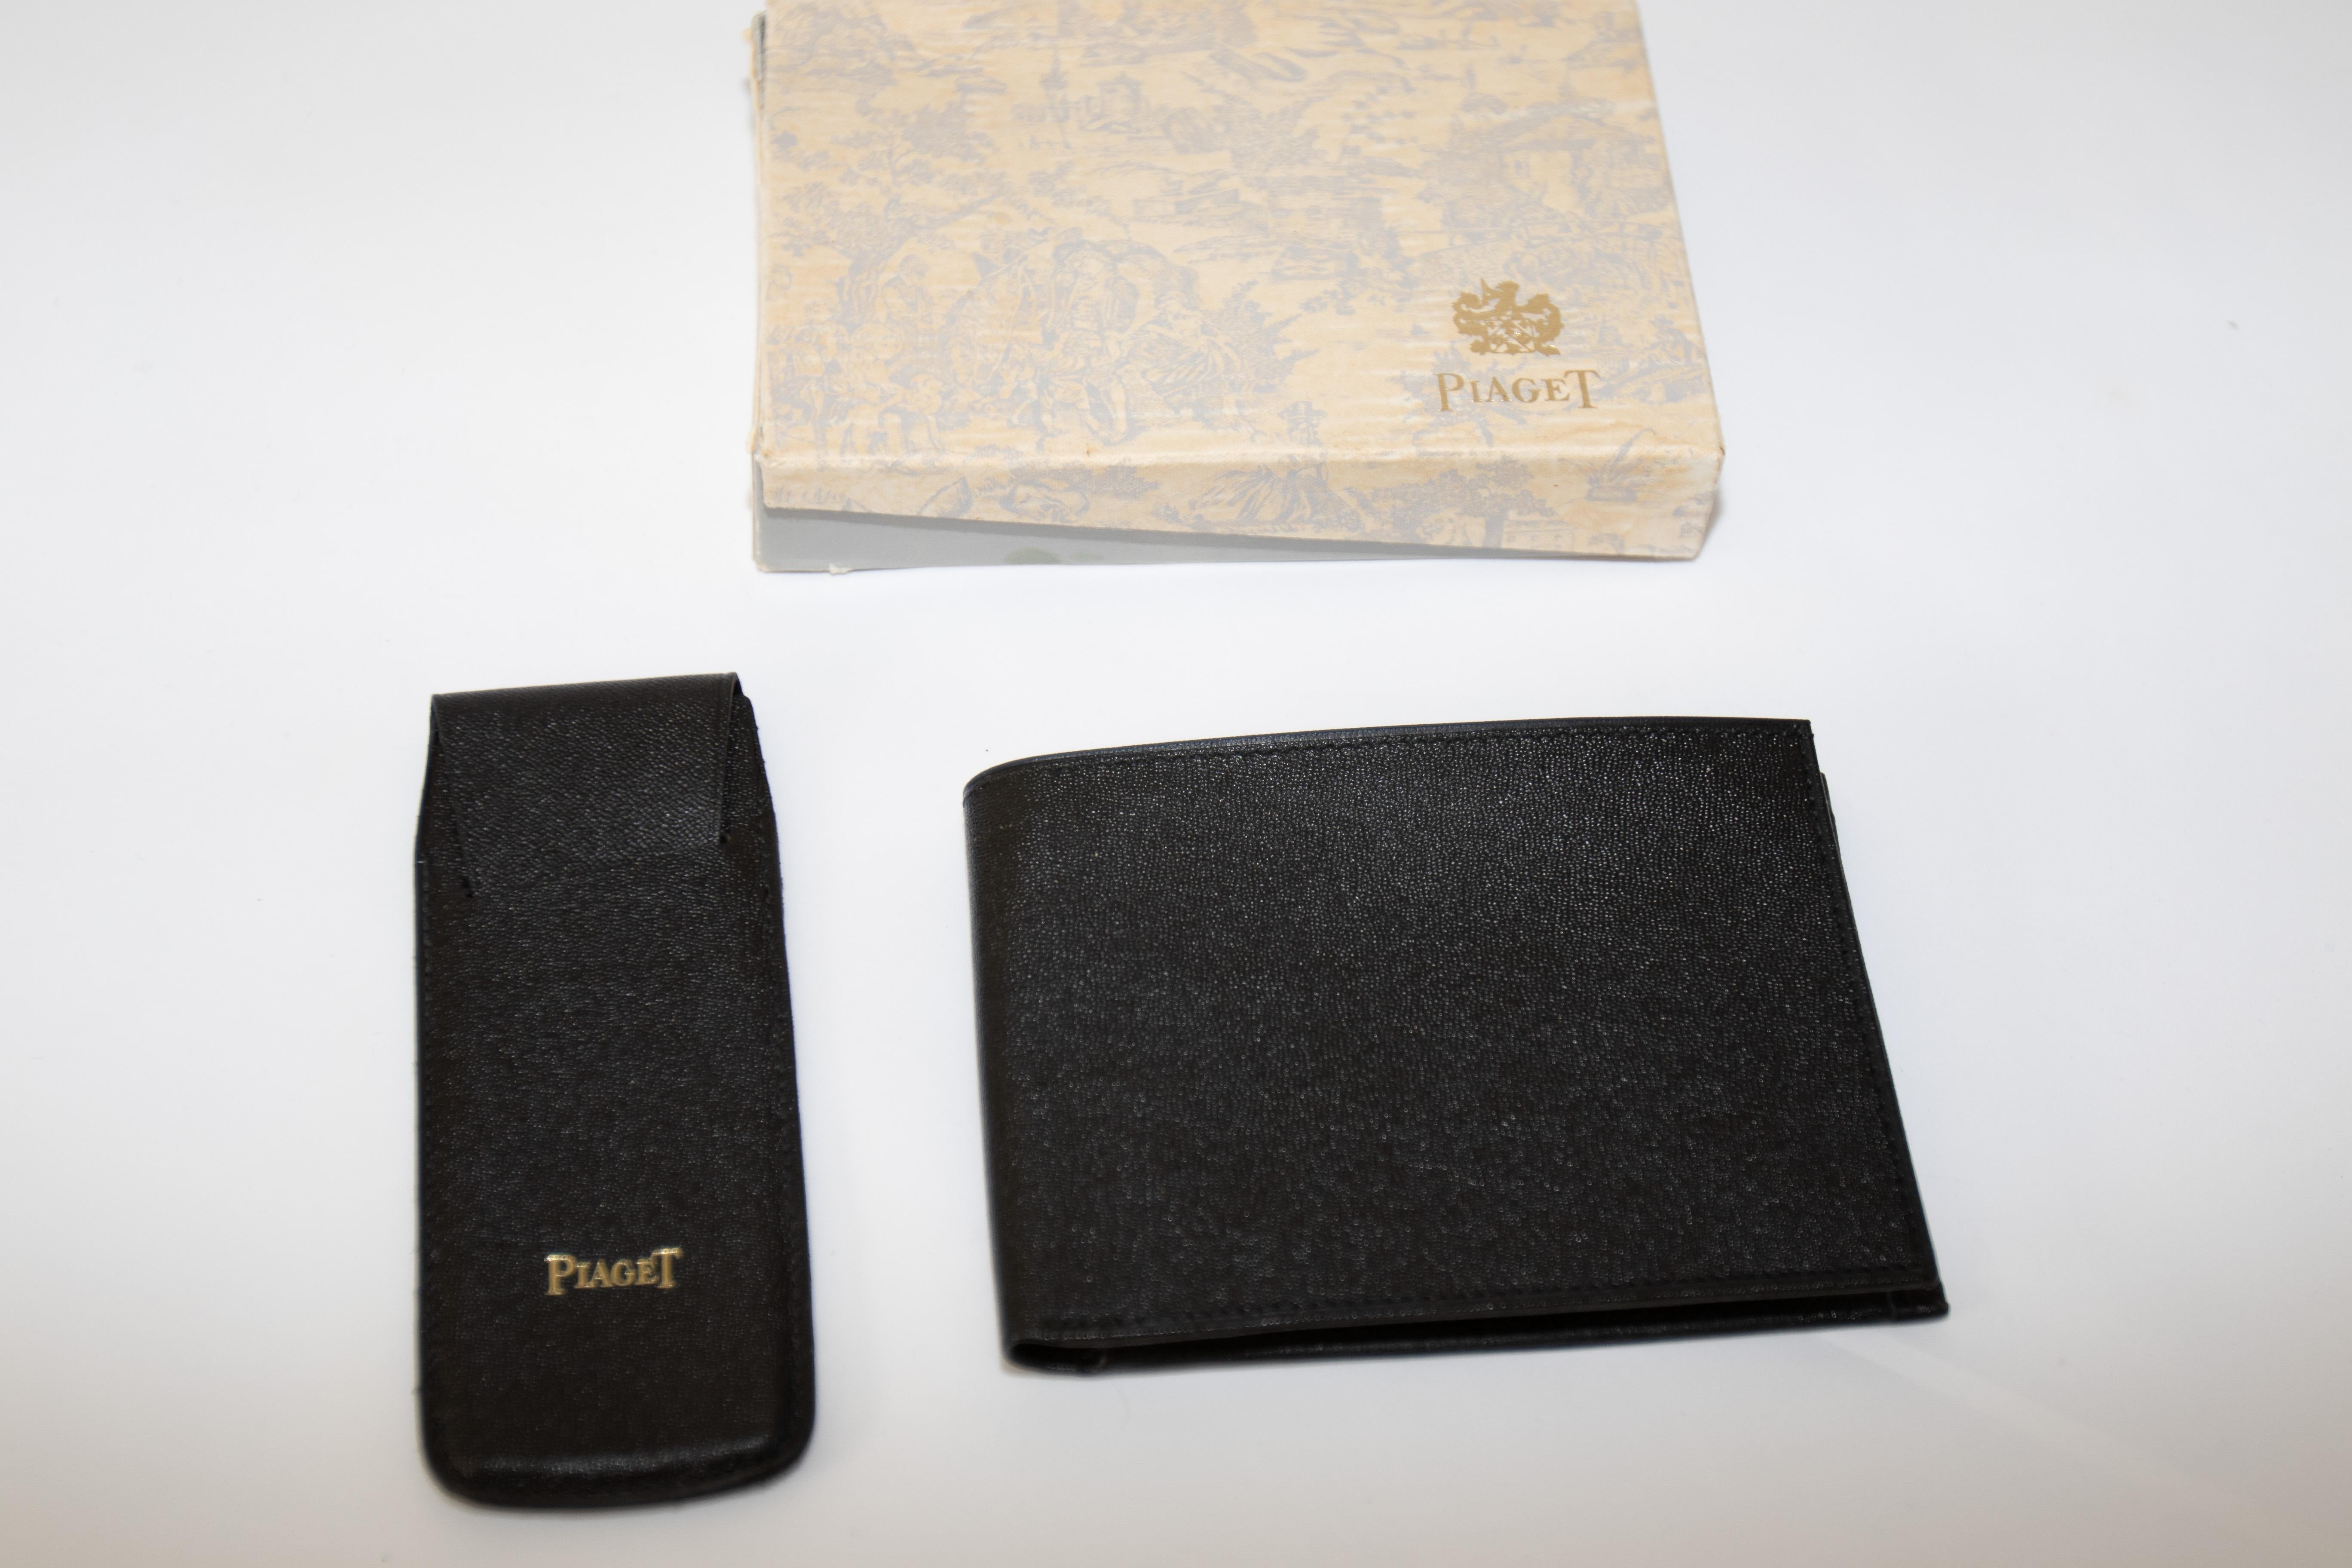 Schwarze Piaget-Ledertasche und kleine Uhrenkoffer in Original-Vintage-Box.
Piaget Vintage Leder Geldbörse schwarzes Leder komplett äußere Schachtel neu auf Lager.
Das Portemonnaie hat ein Münzfach mit Schnappverschluss. Abmessungen des